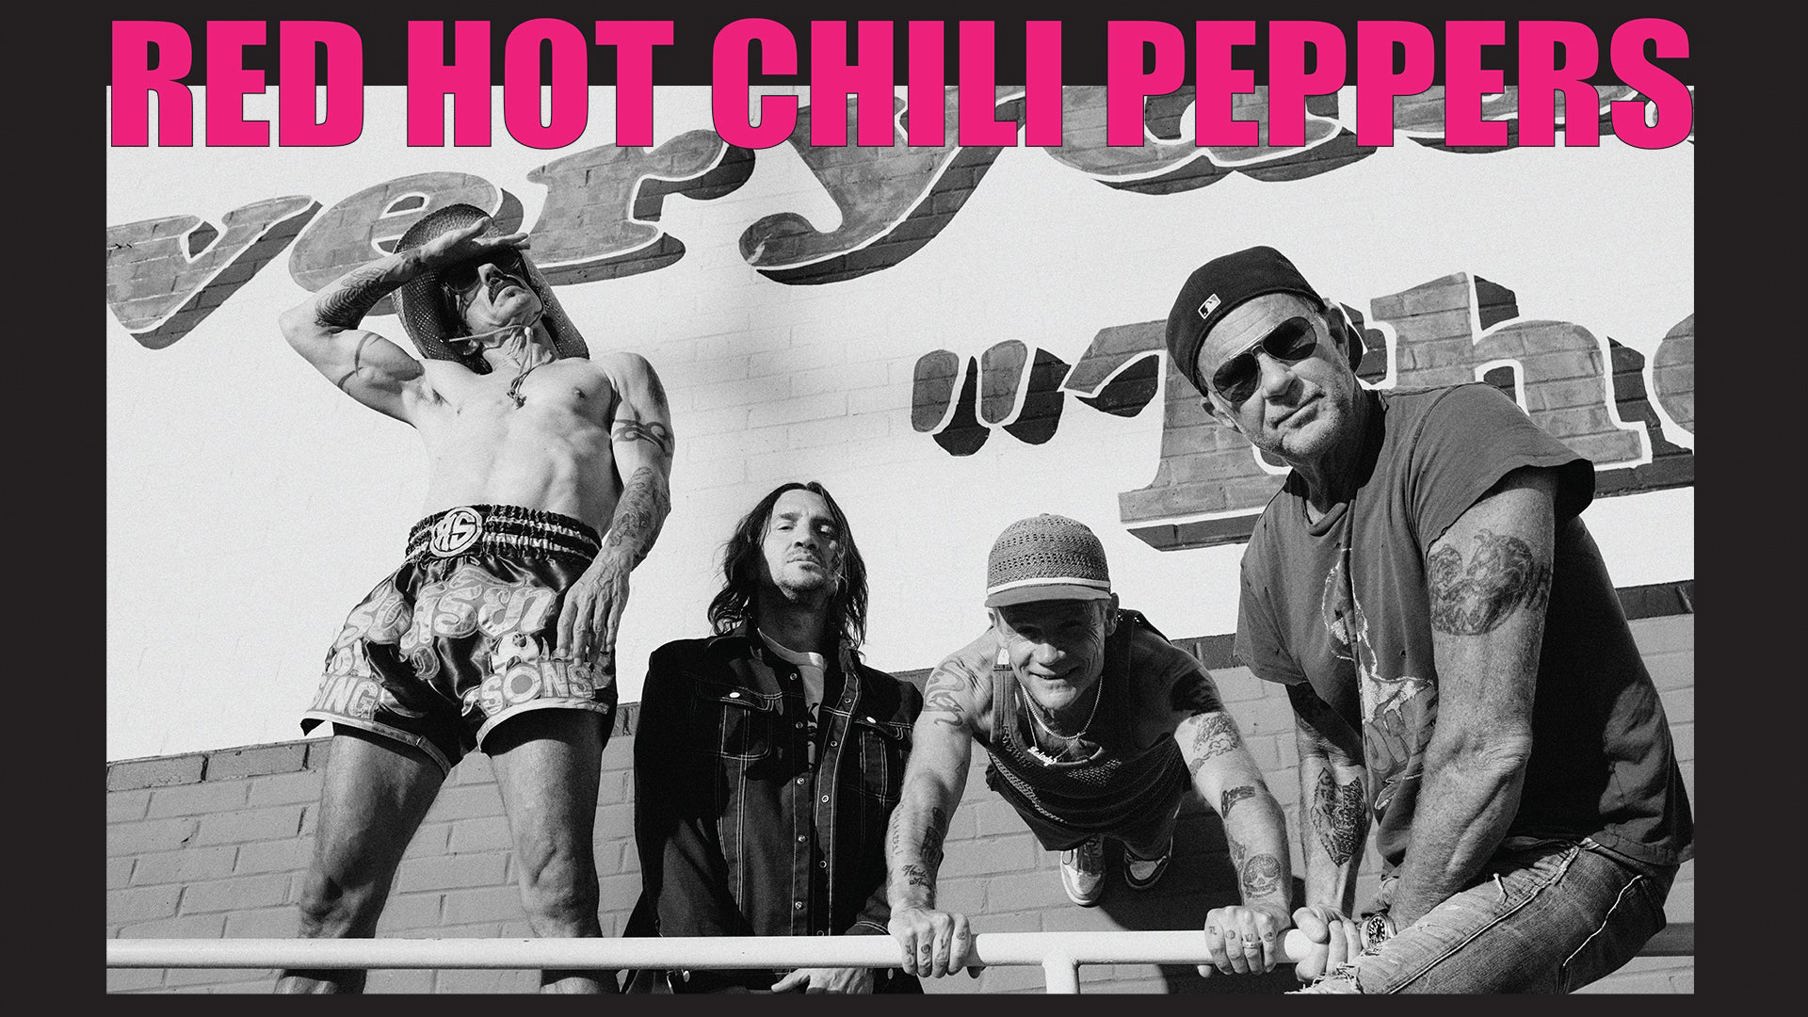 枚数1枚Red Hot Chili Peppers レッチリ　チケット　東京ドーム